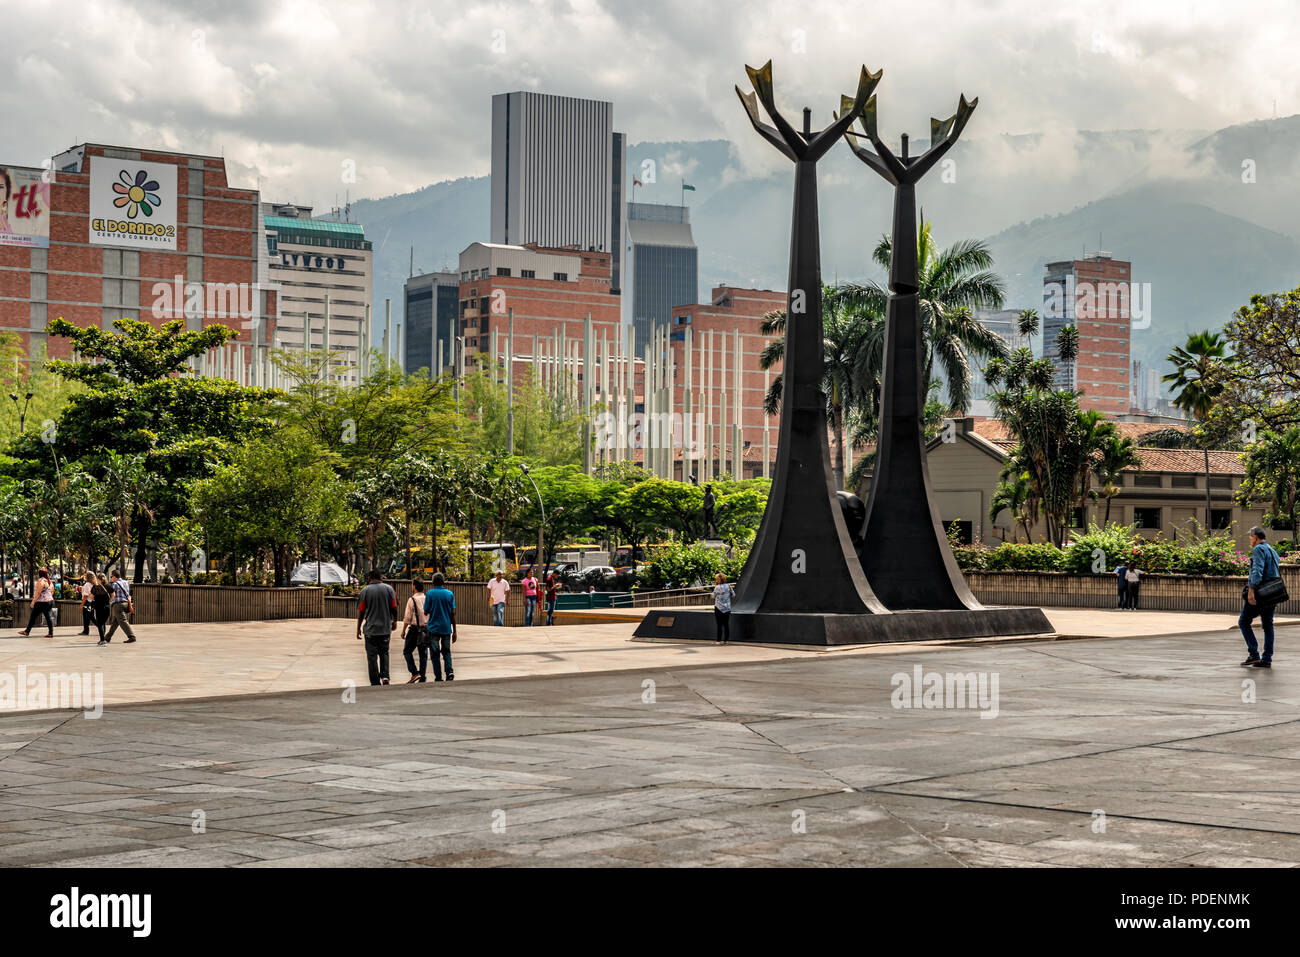 Medellin, Kolumbien - 26. März 2018: Blick auf Monument, ein Tribut an Ärzte Guillermo Gaviria und Gilberto Echeverri, in der Alpujarra square t entfernt Stockfoto